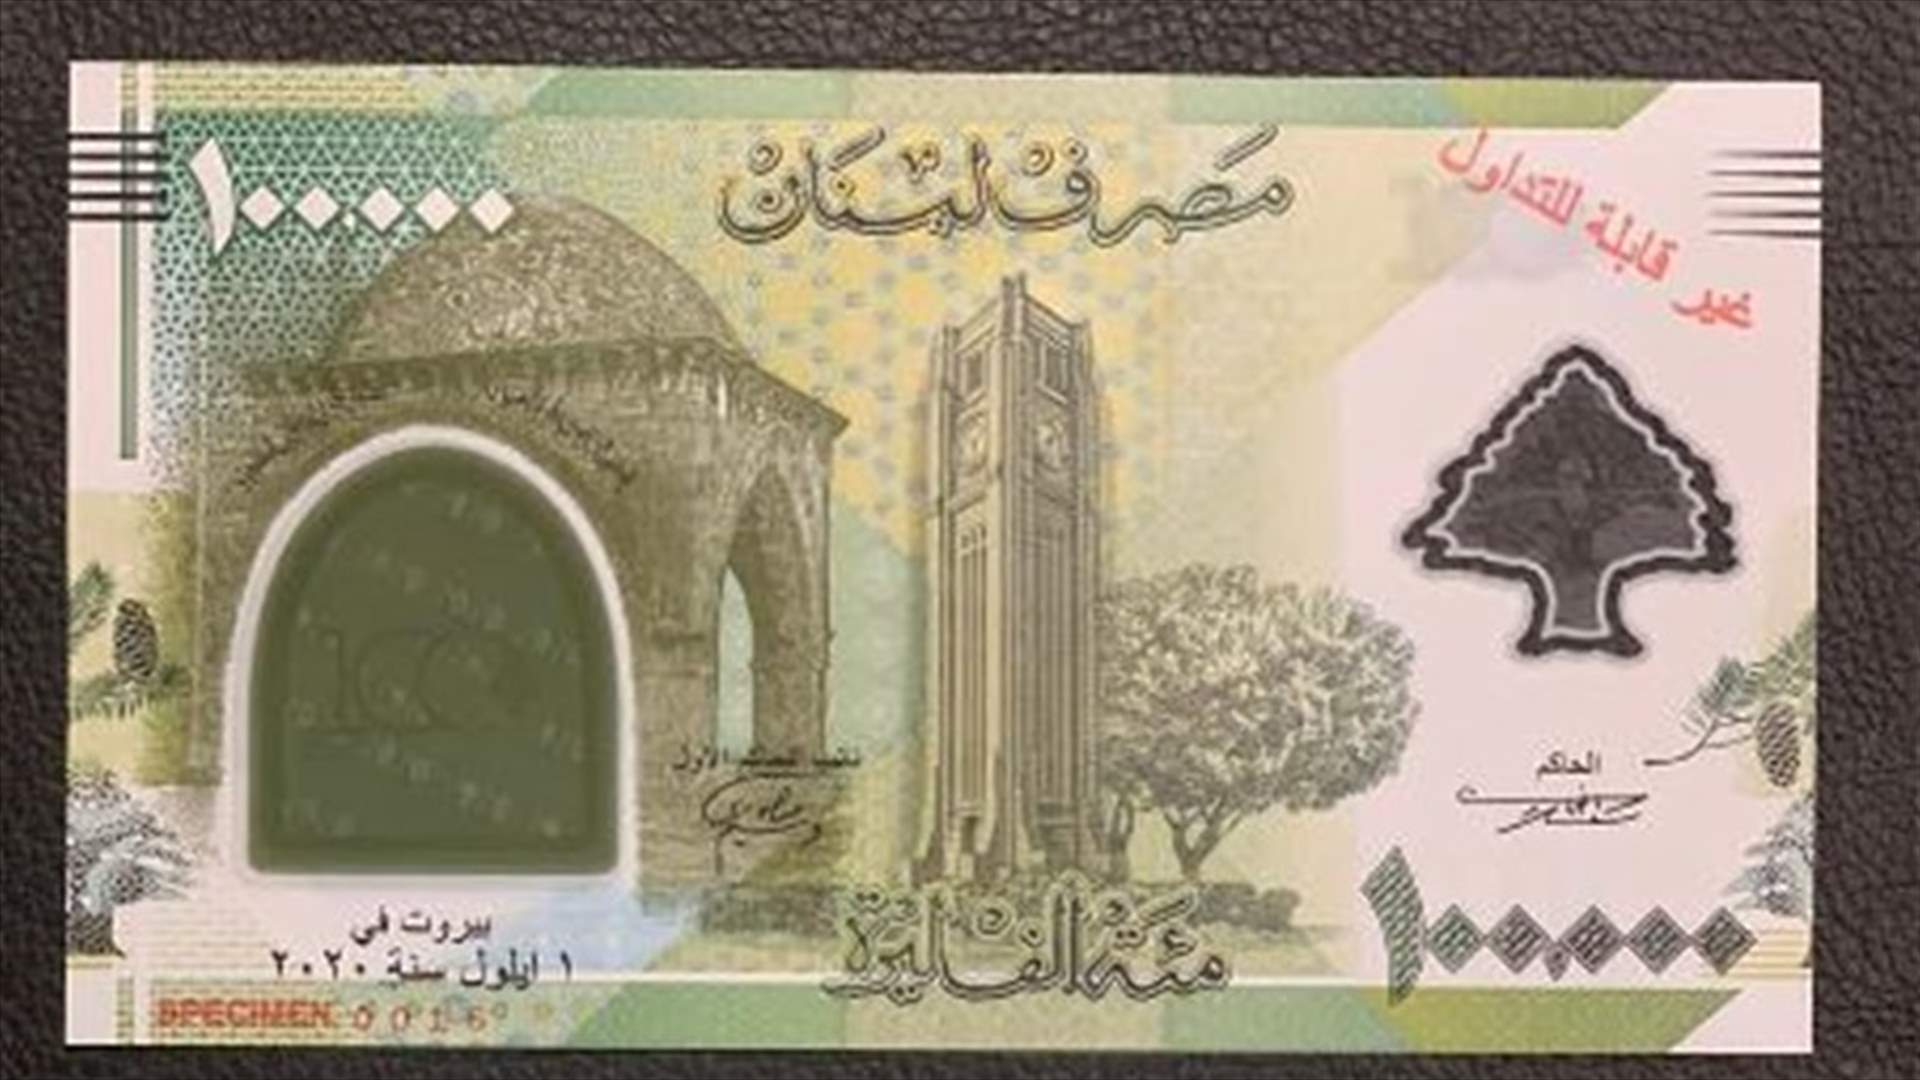 مصرف لبنان يضع في التداول ورقة نقدية جديدة من فئة المئة ألف ليرة (صورة)